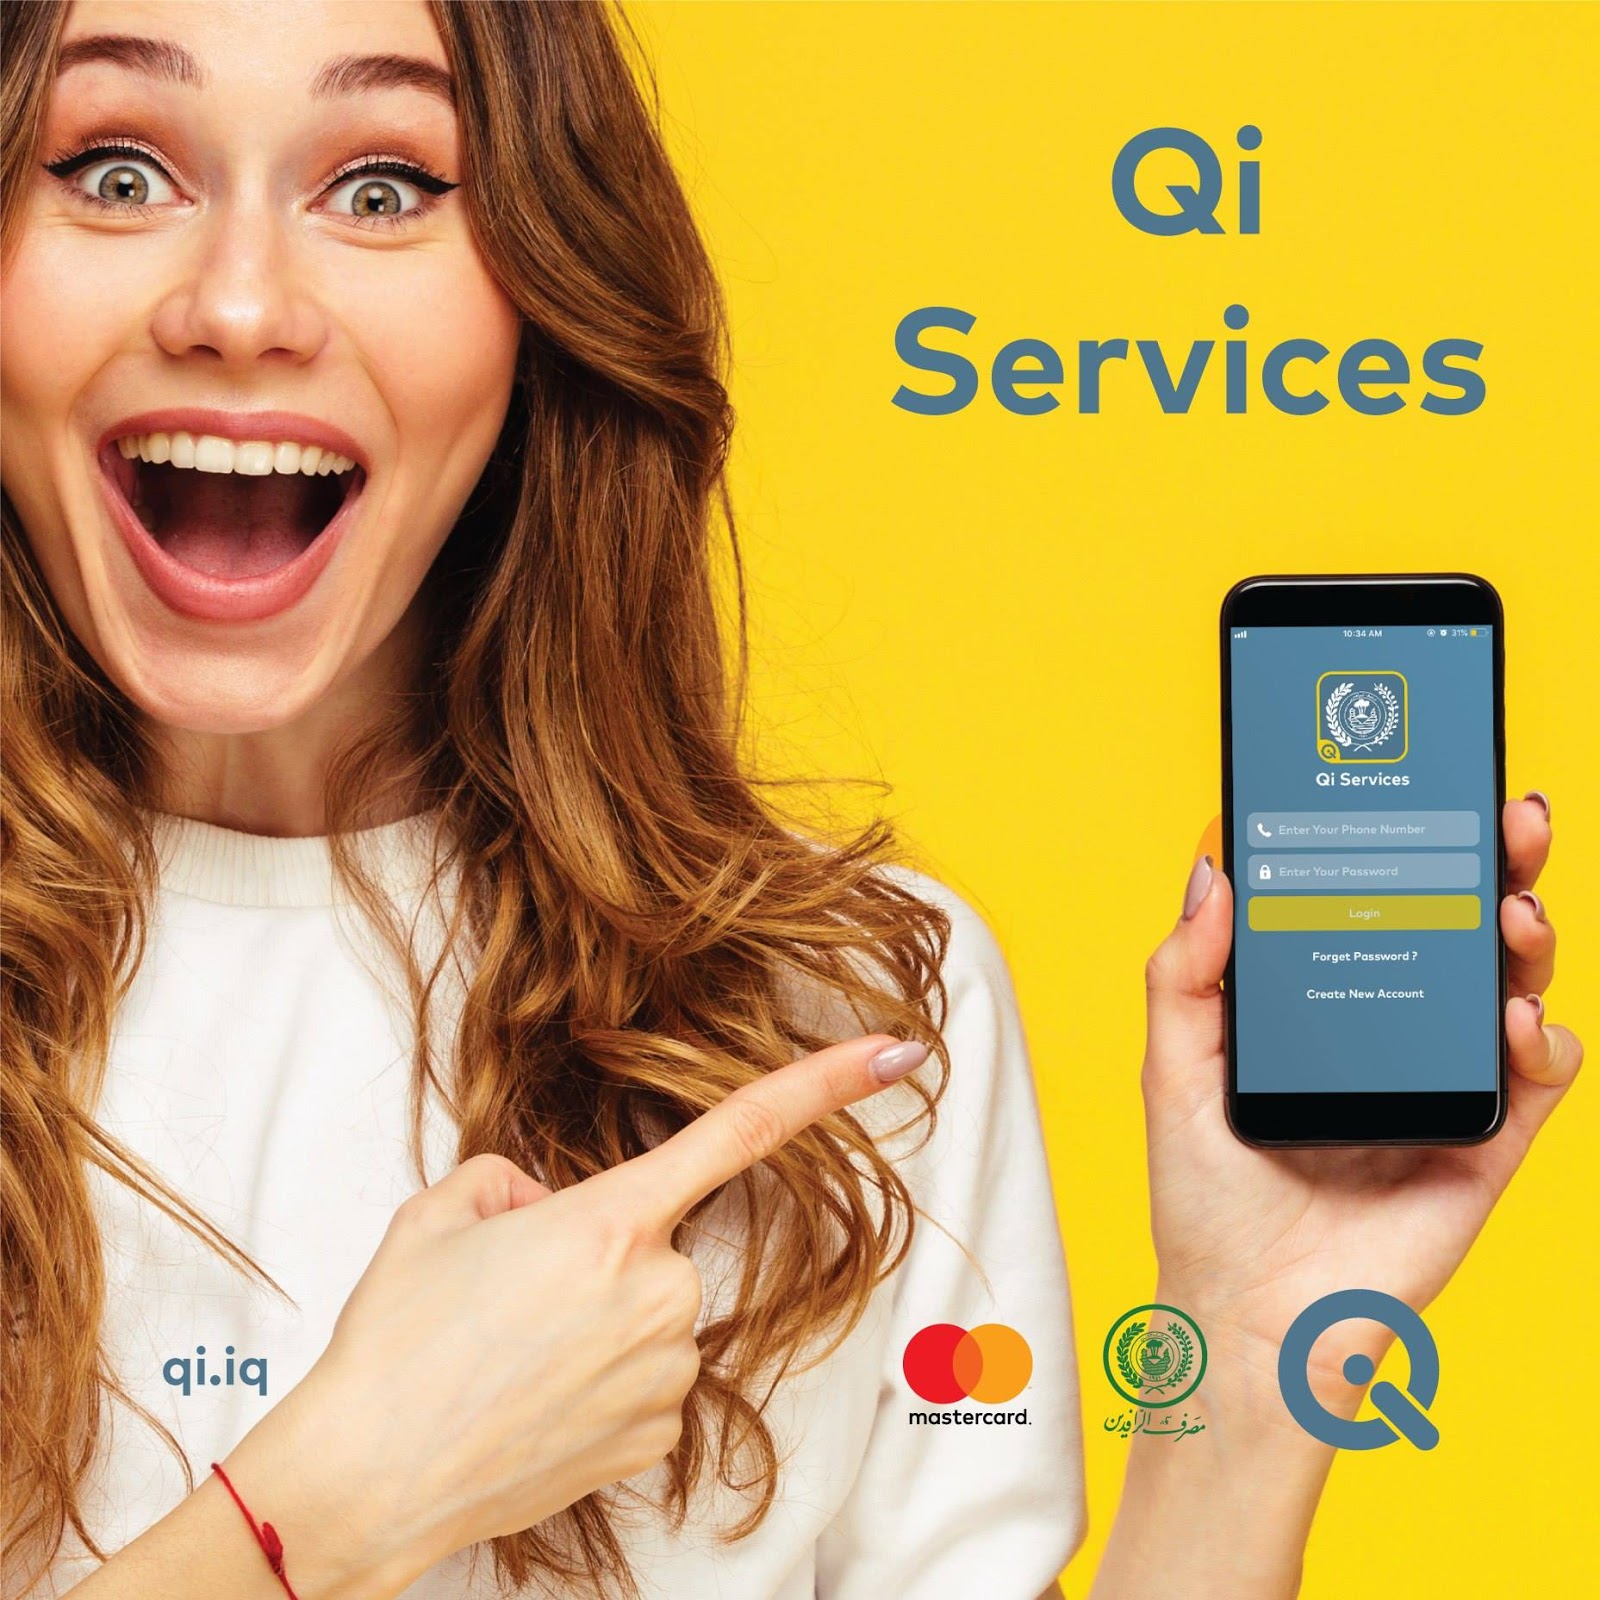 تطبيق Qi Services يتيح لك معرفة رصيد بطاقة كي كارد من خلال الهاتف